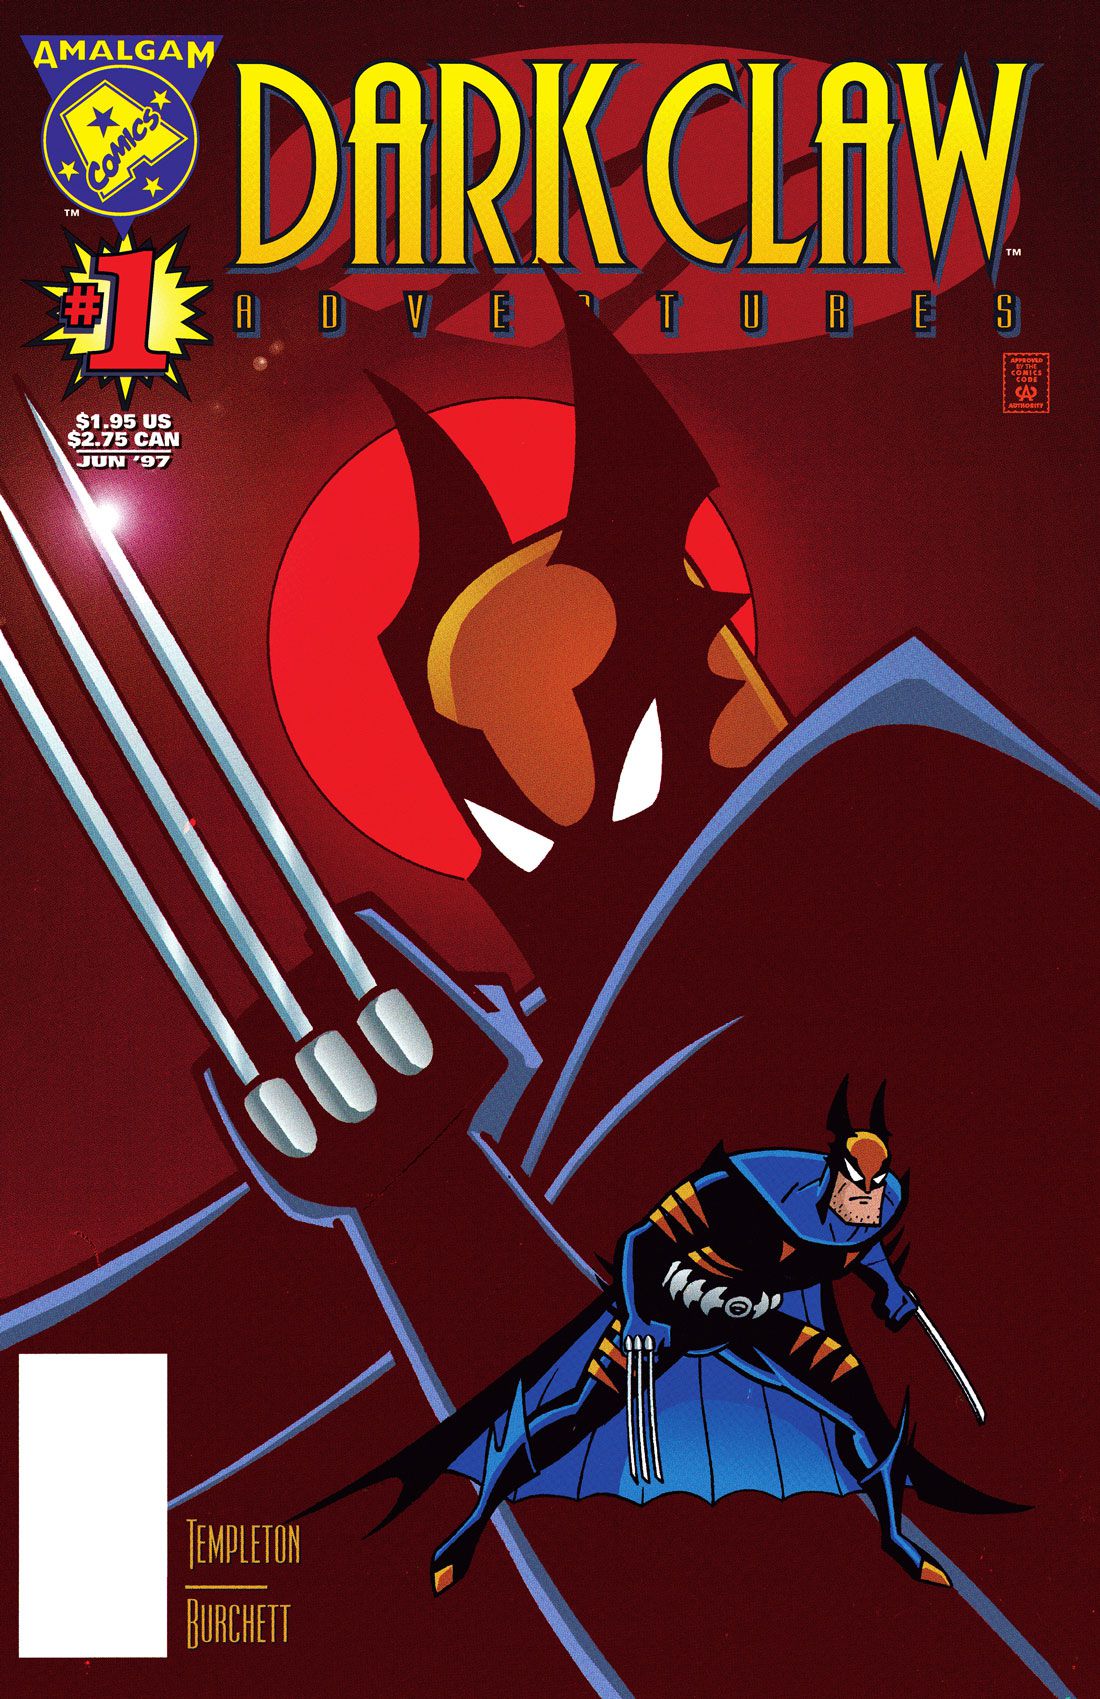 La couverture du crossover Batman/Wolverine Dark Claw